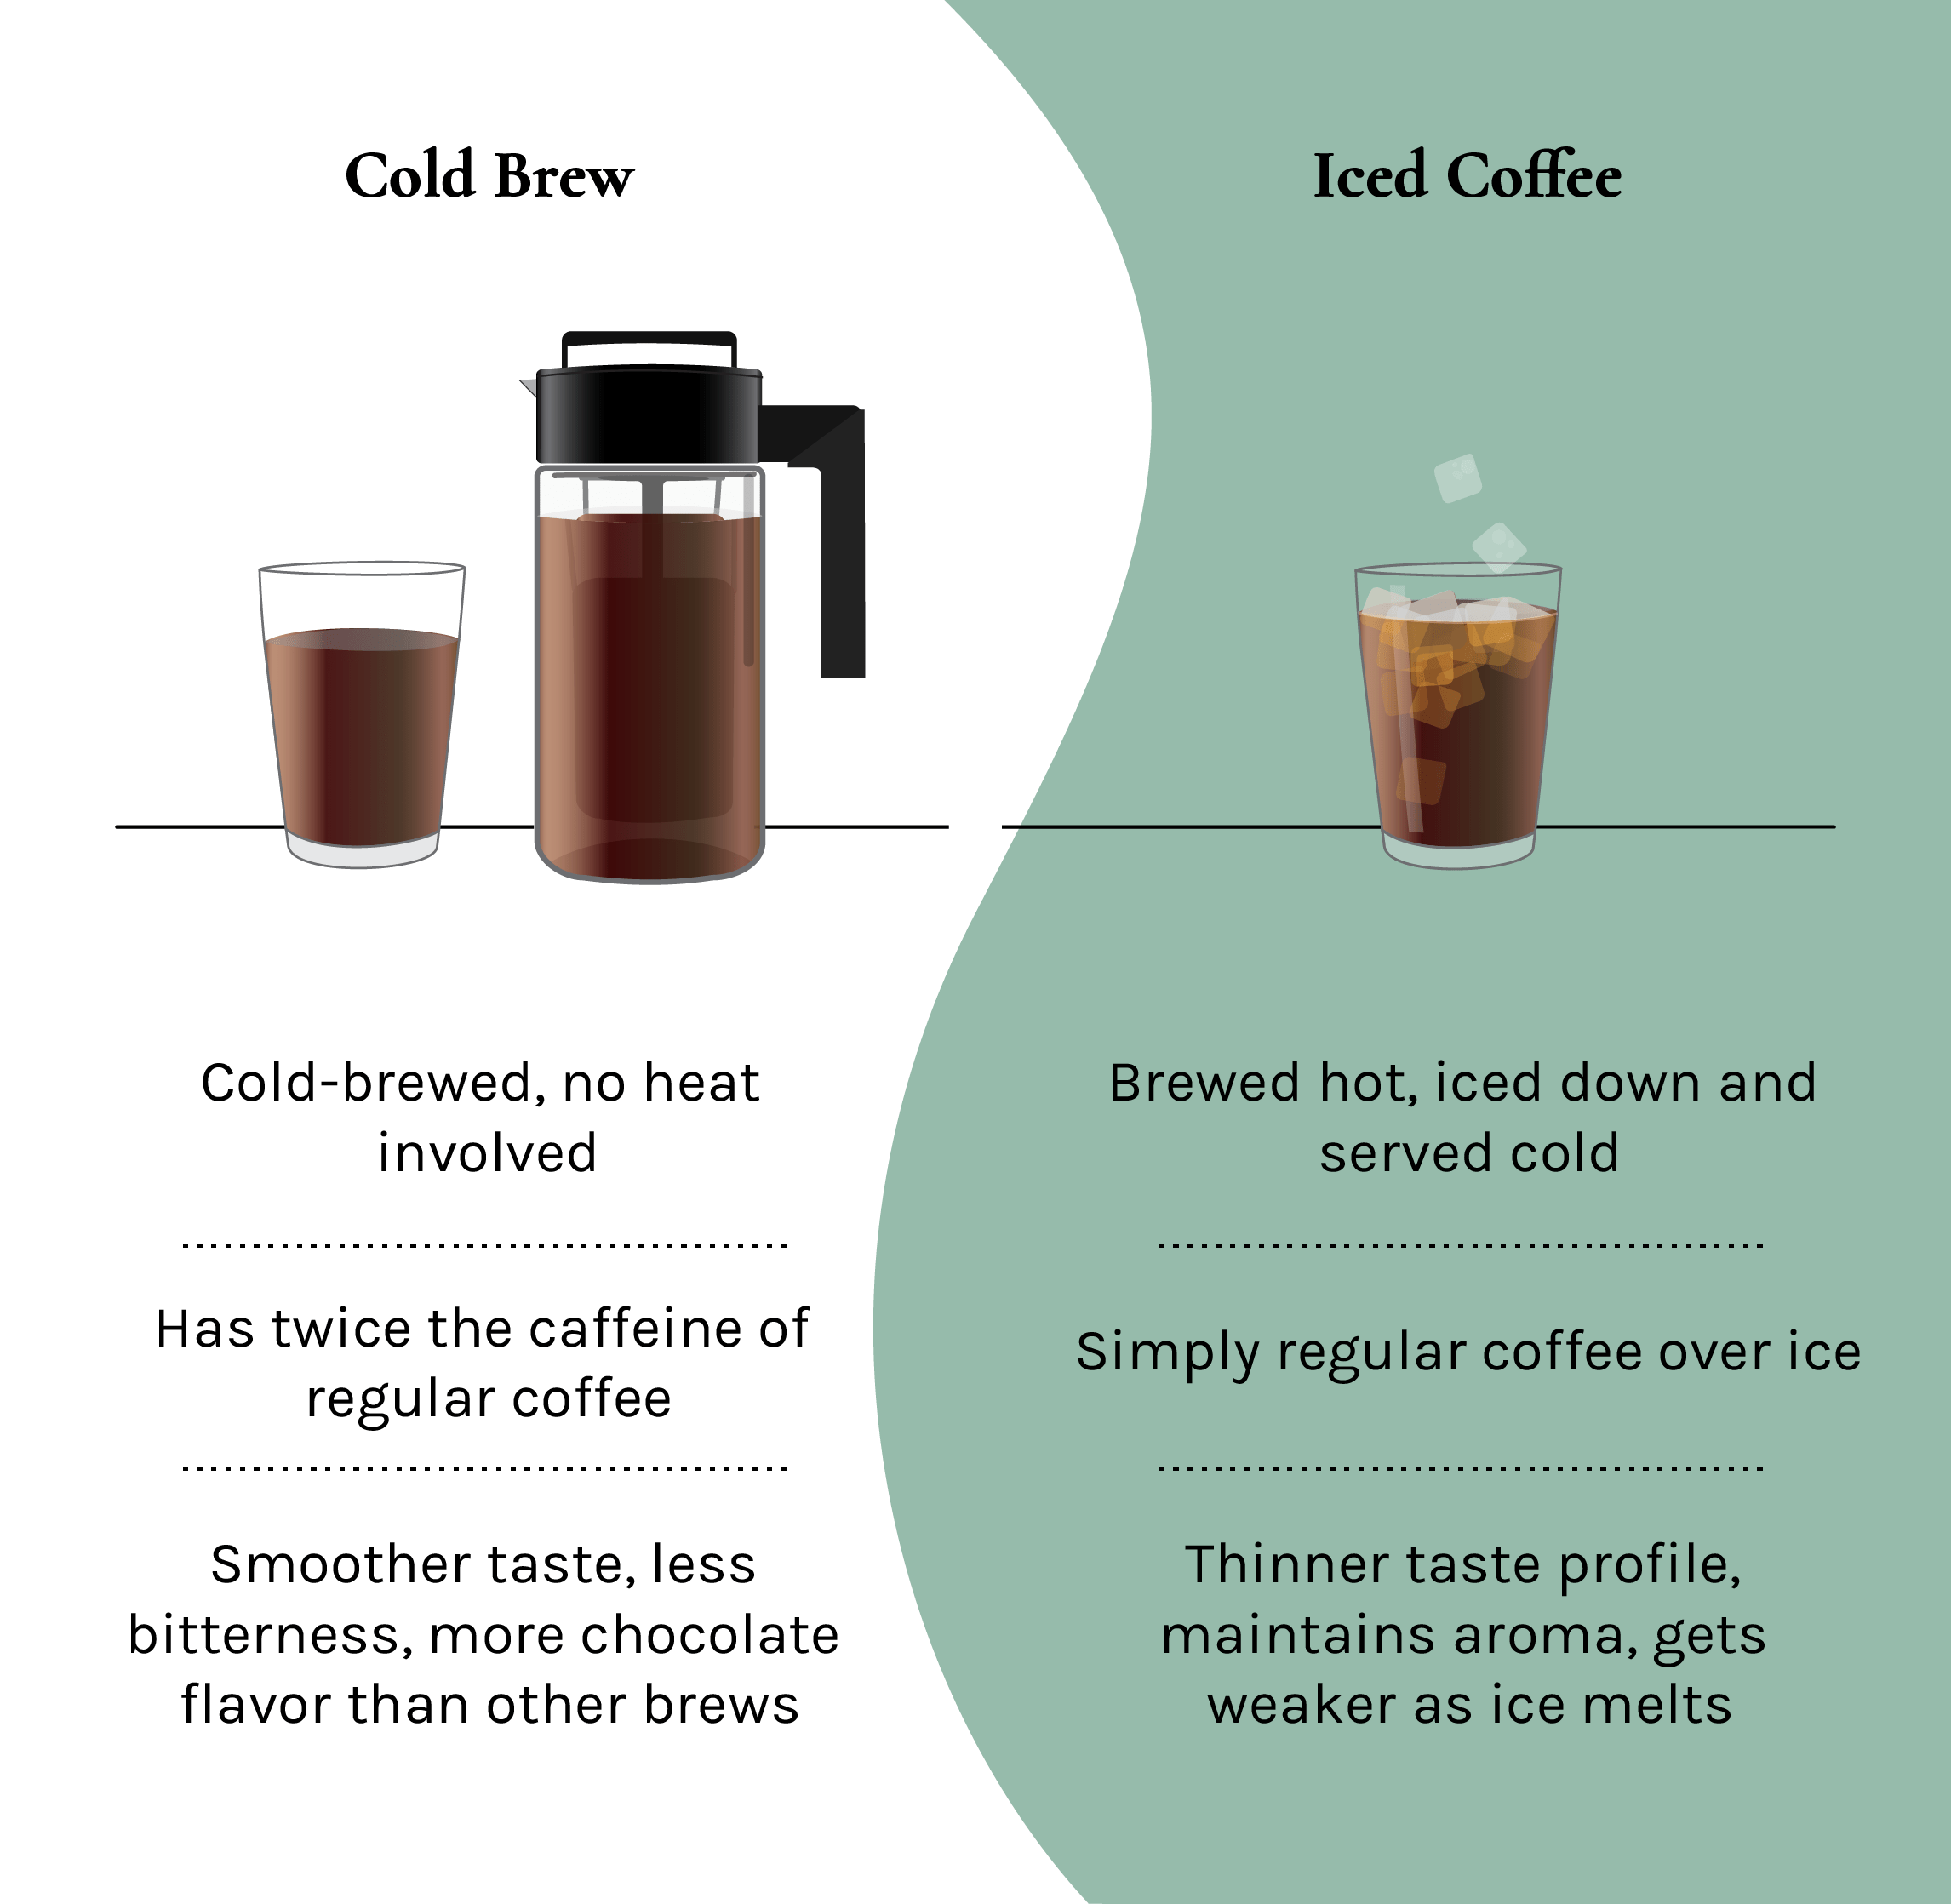 Топ-11 рецептов холодного кофе для лета